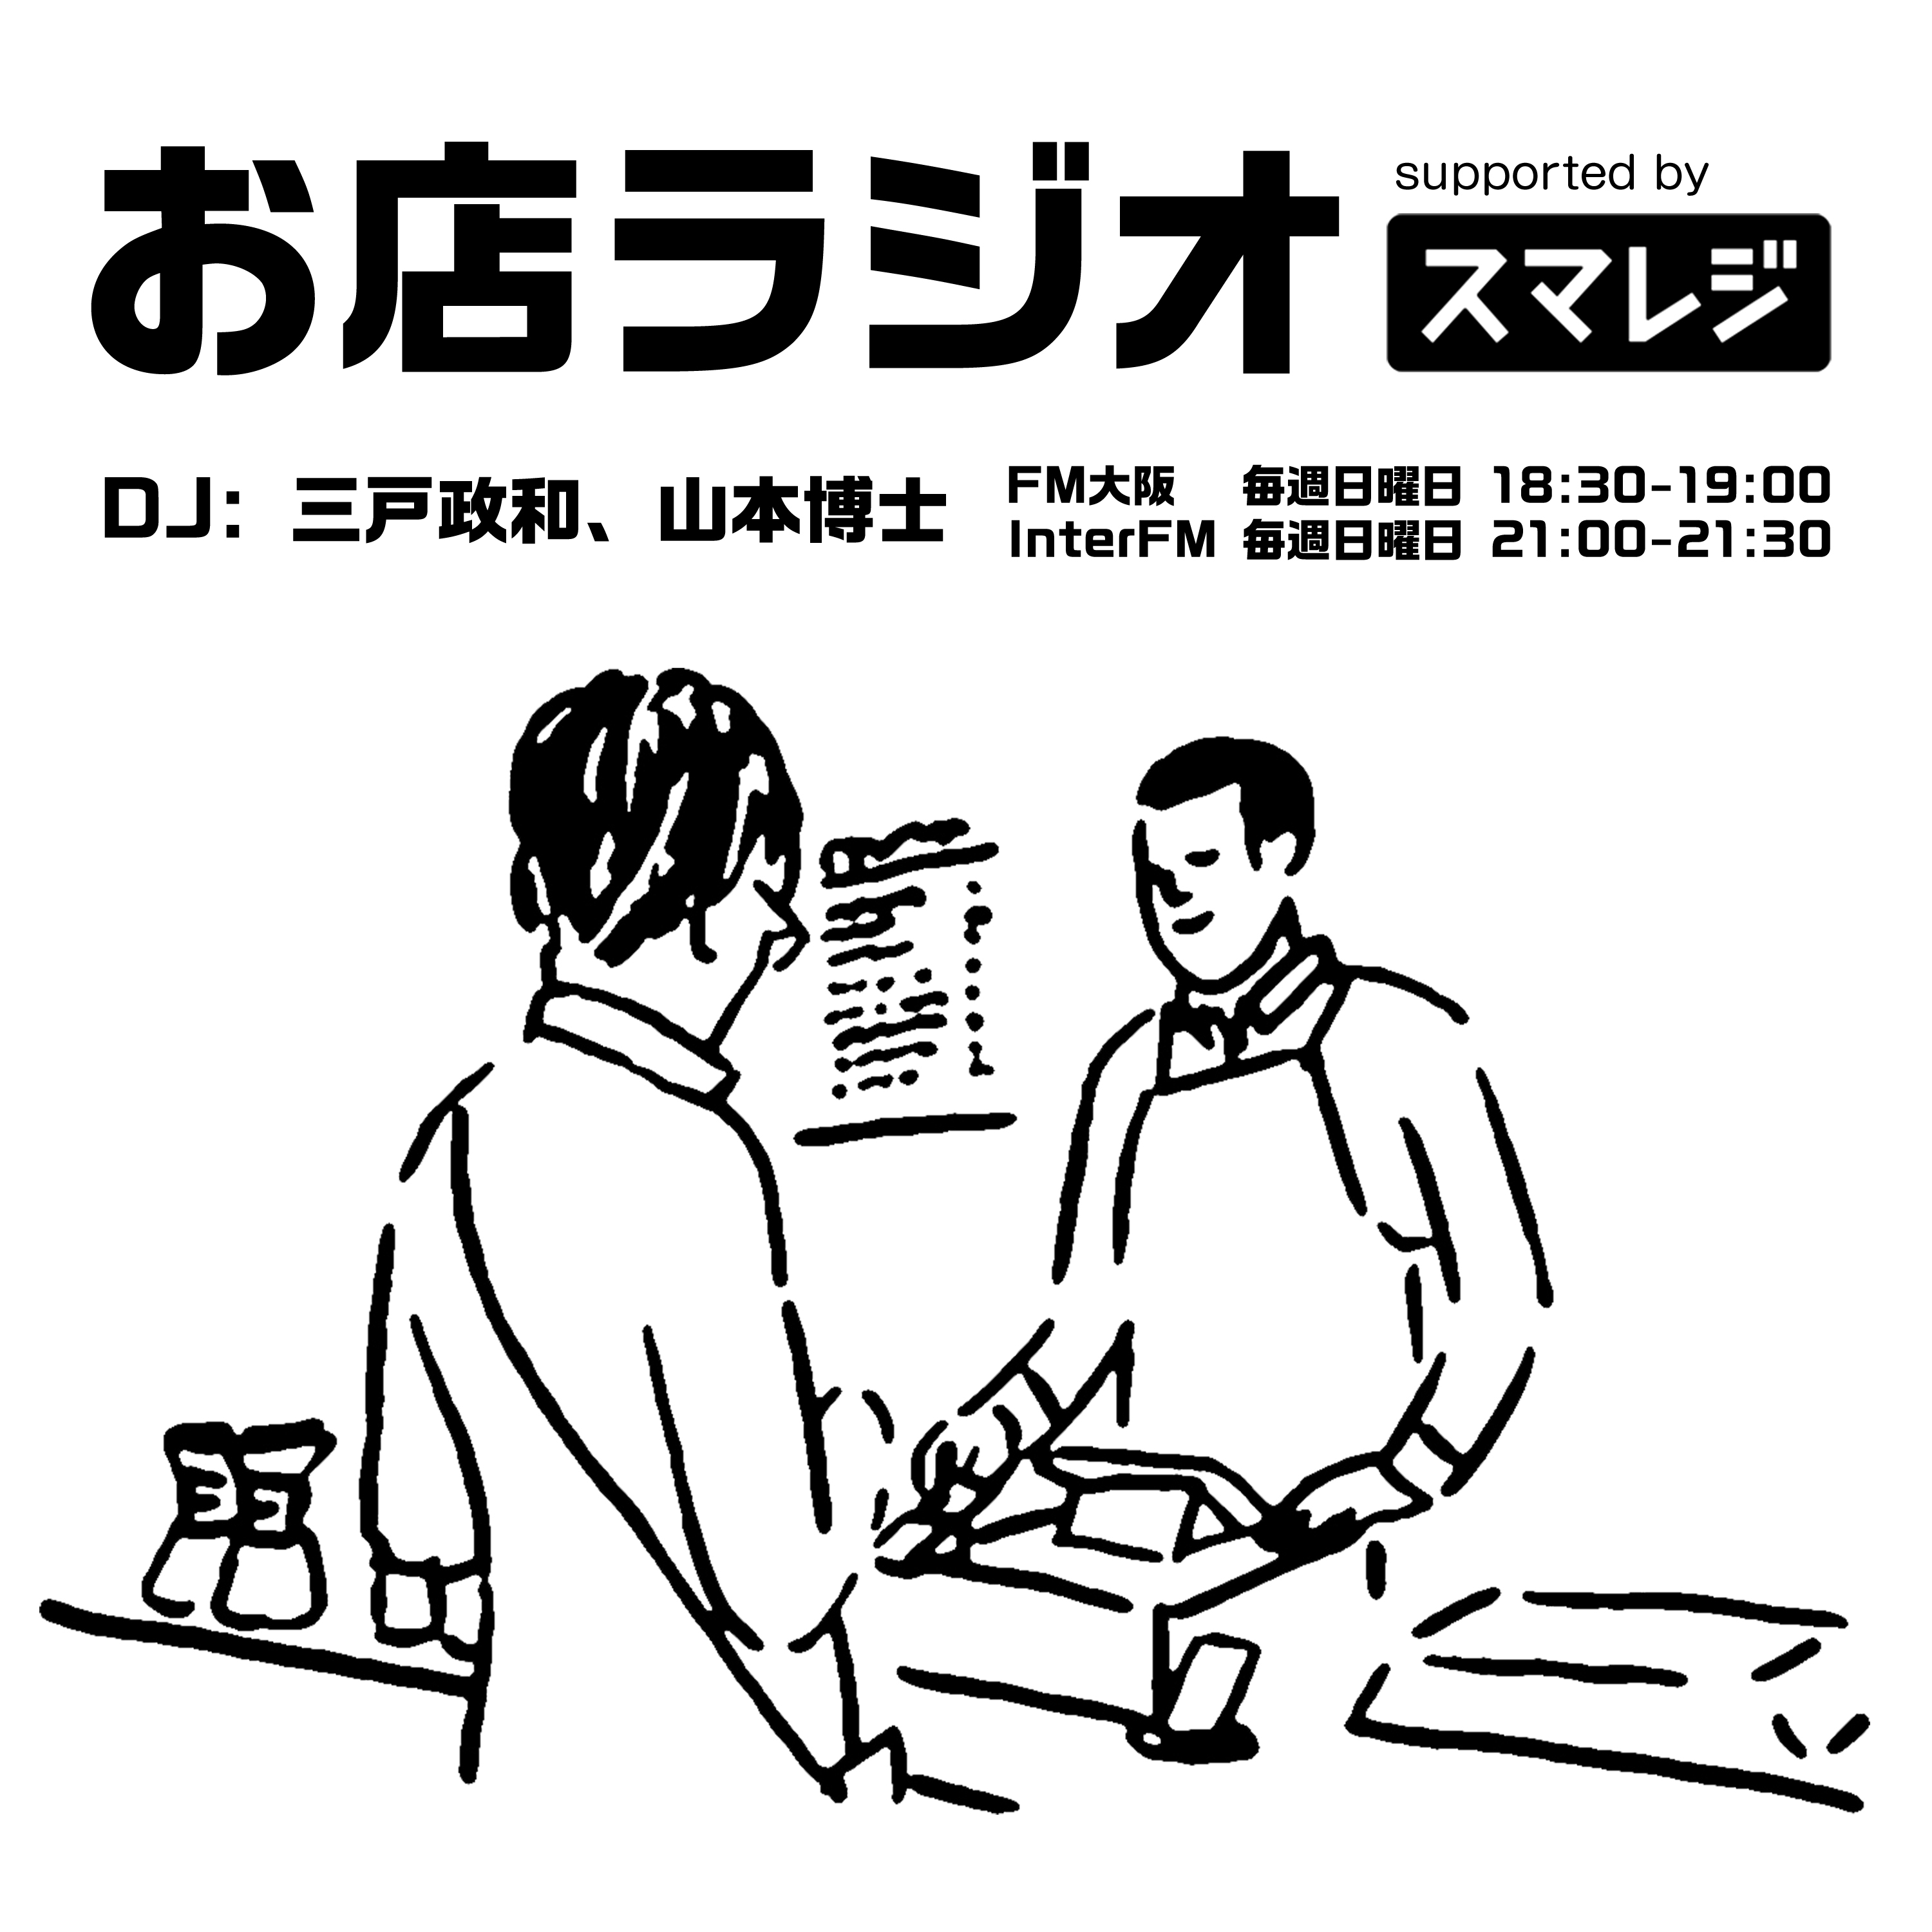 お店ラジオ supported by スマレジ #26